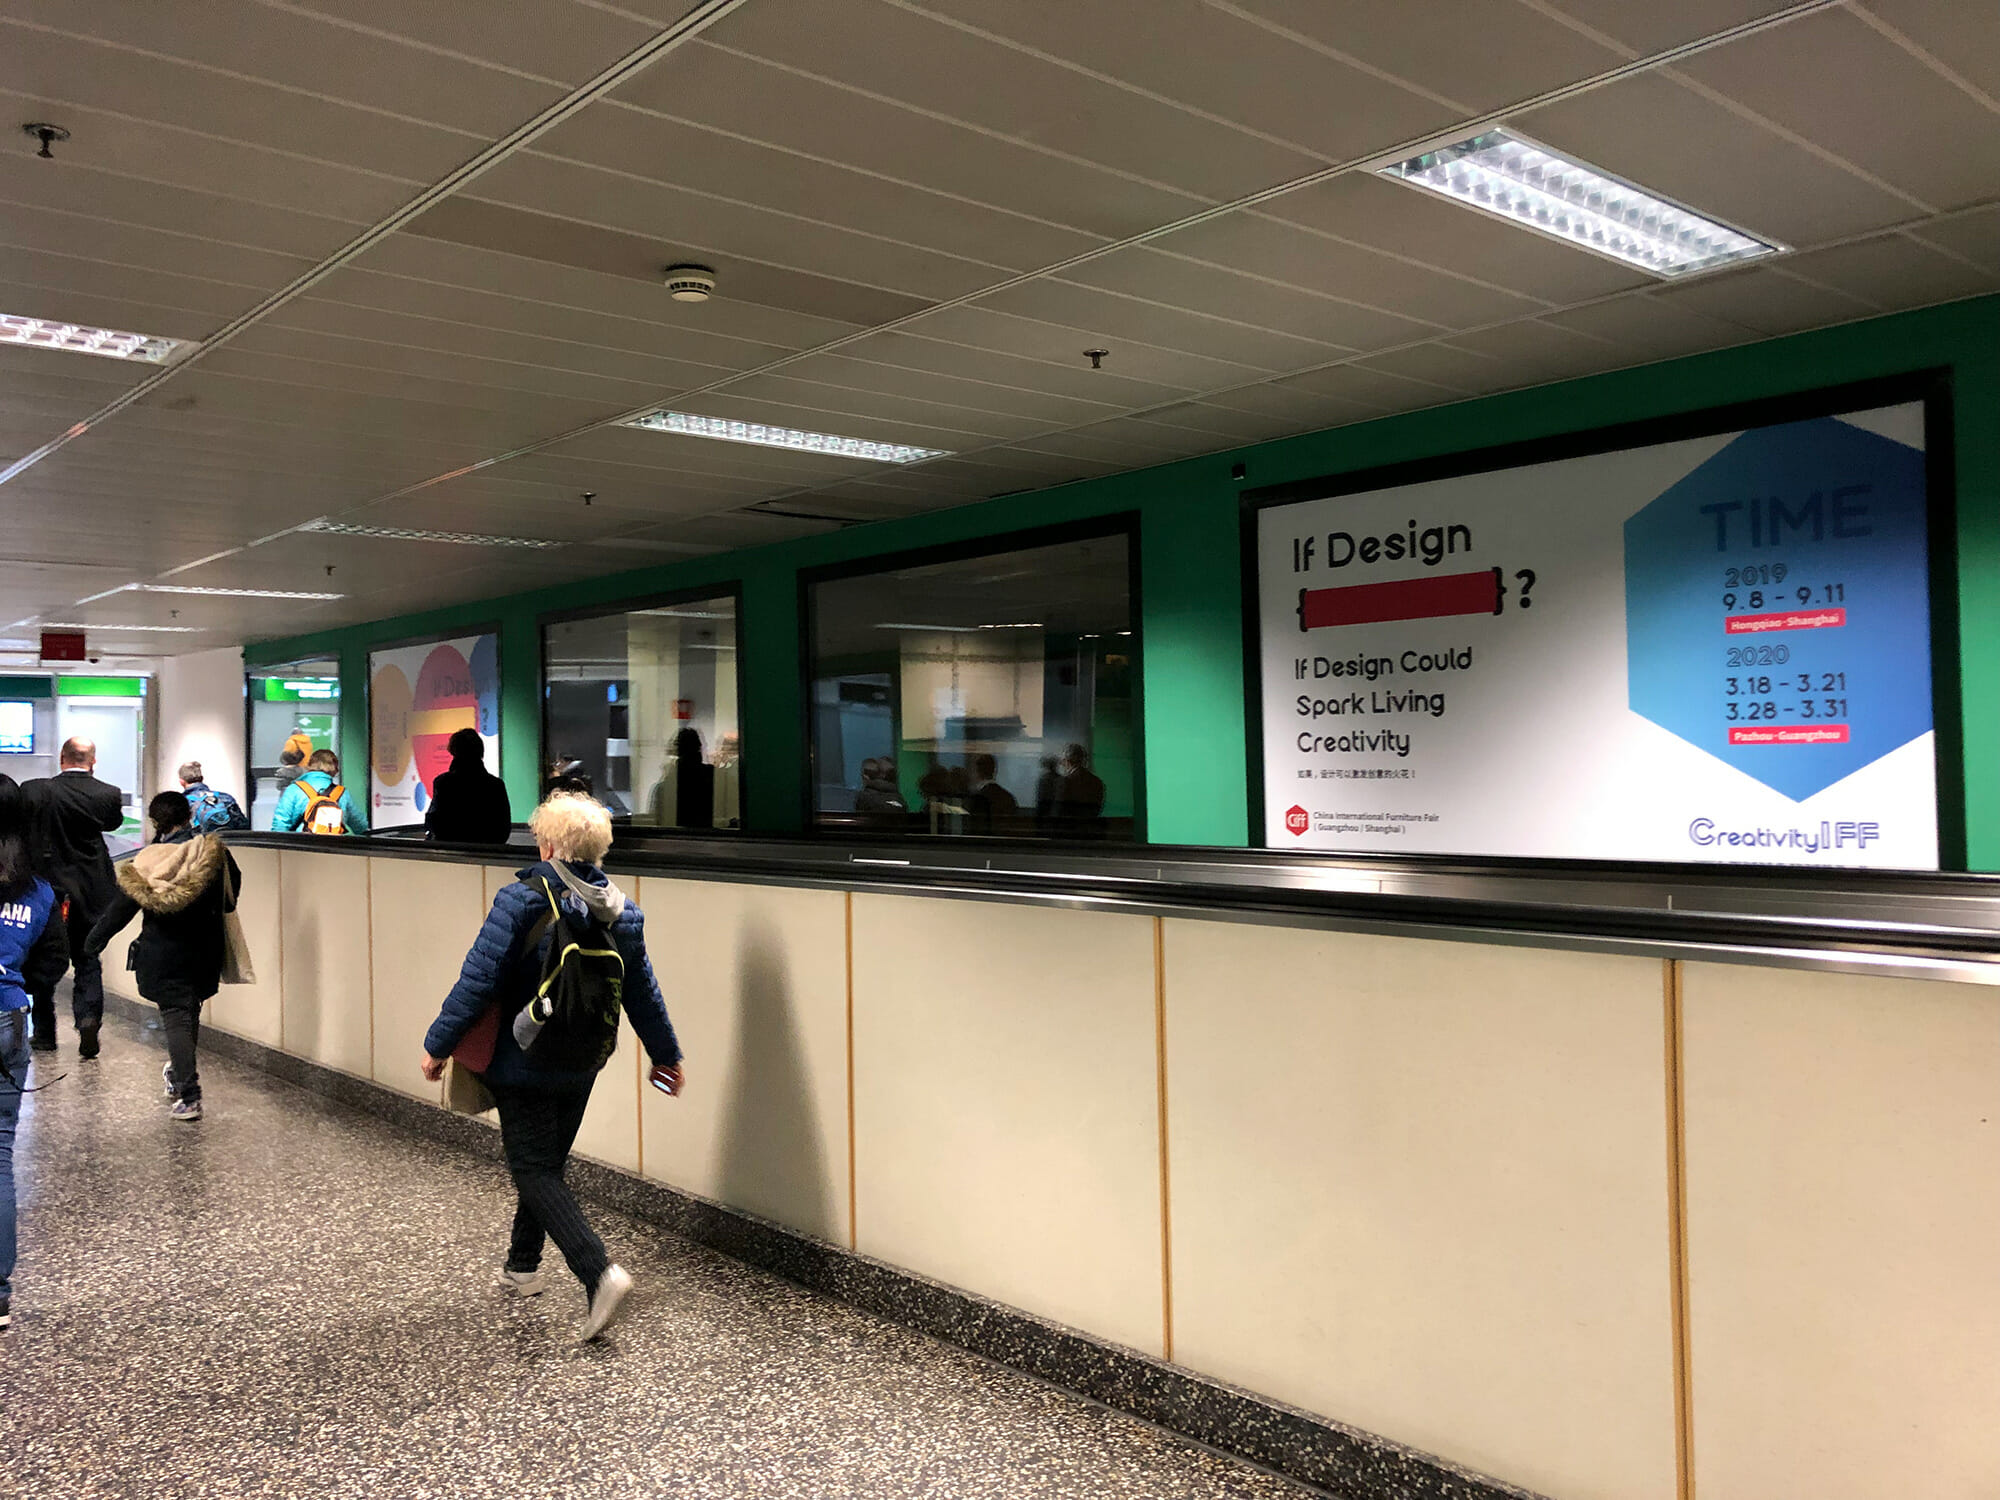 ミラノのマルペンサ空港の通路、サローネ会場へと続く地下鉄の通路とともに広告枠は中国の家具見本市の広告でジャックされていた